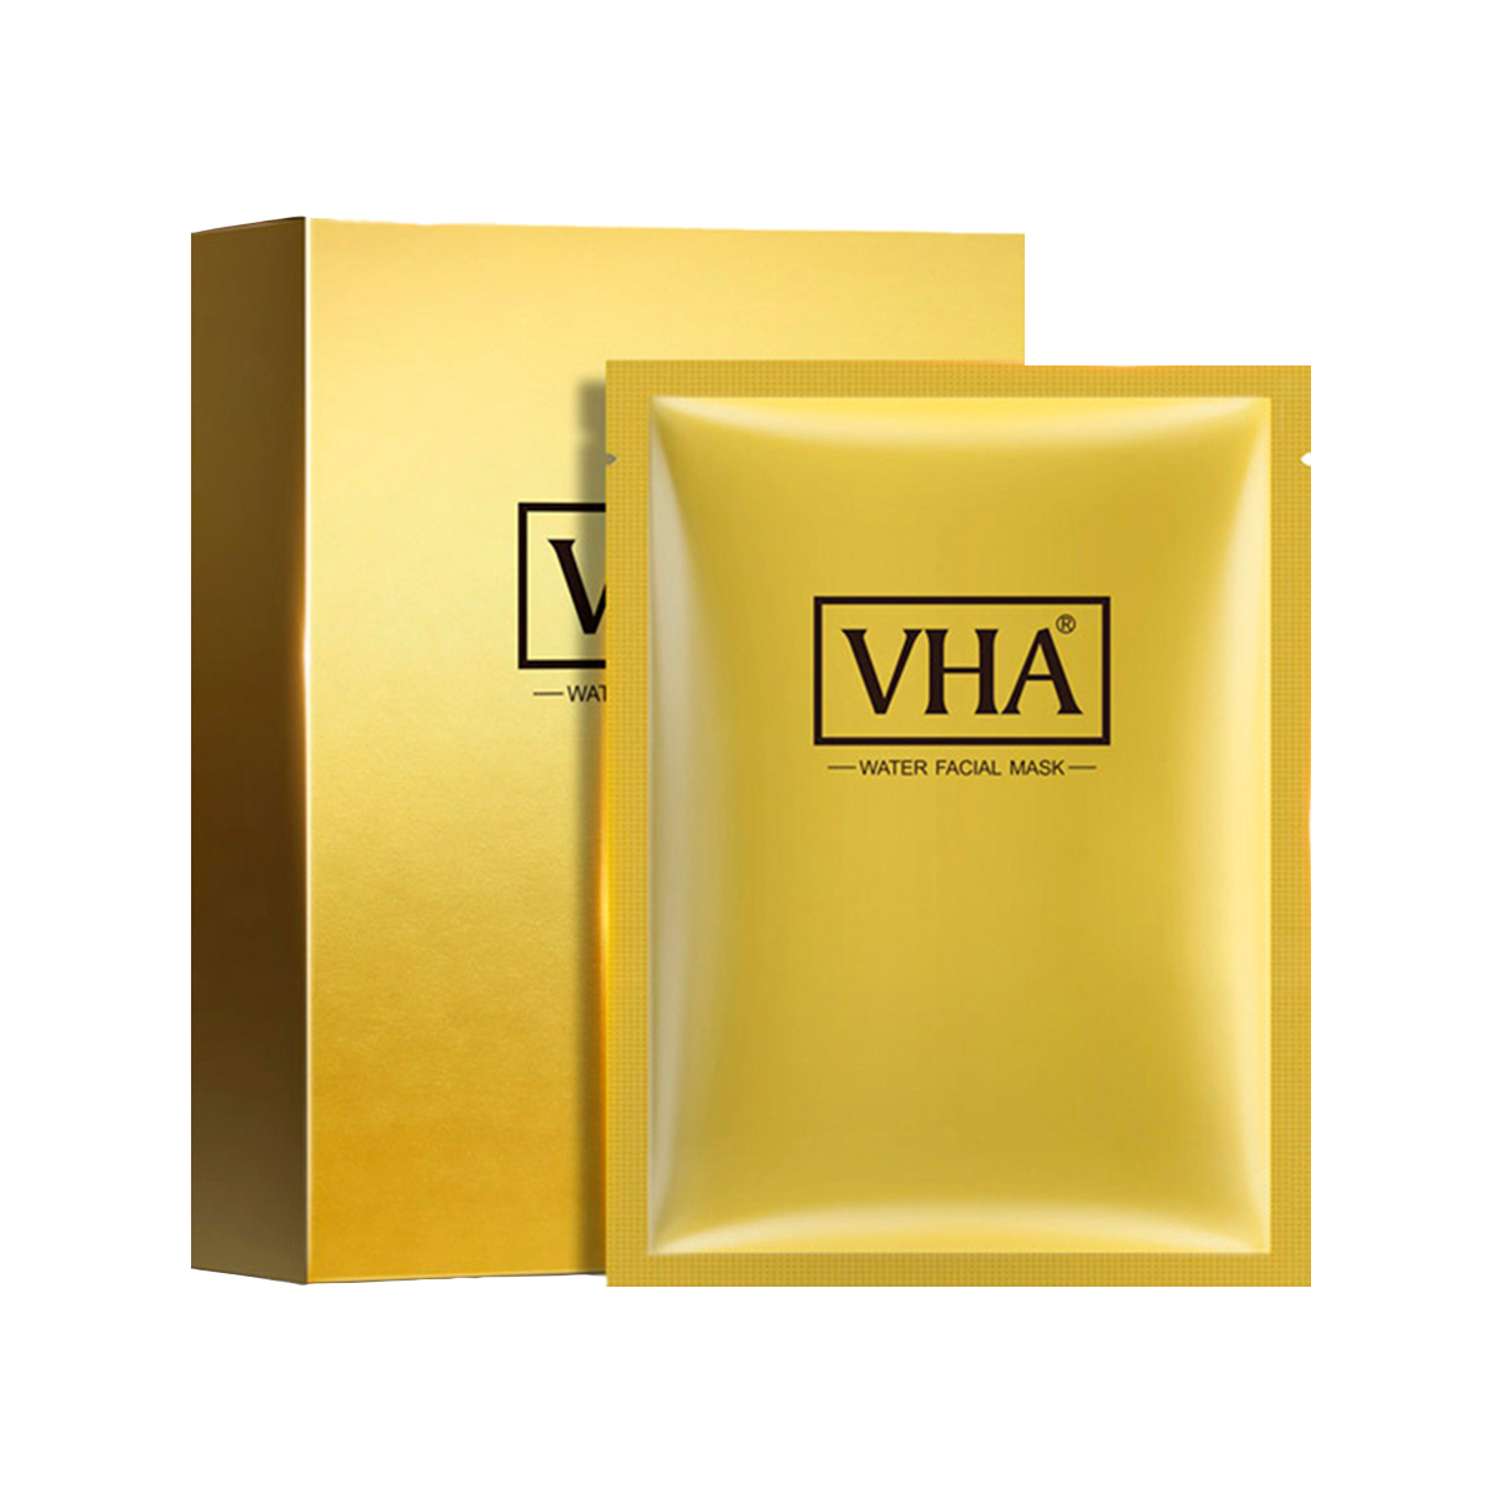 Омолаживающая маска для лица VHA с протеинами шелка и муцином улитки упаковка 25 гр х 10 шт - фото 5